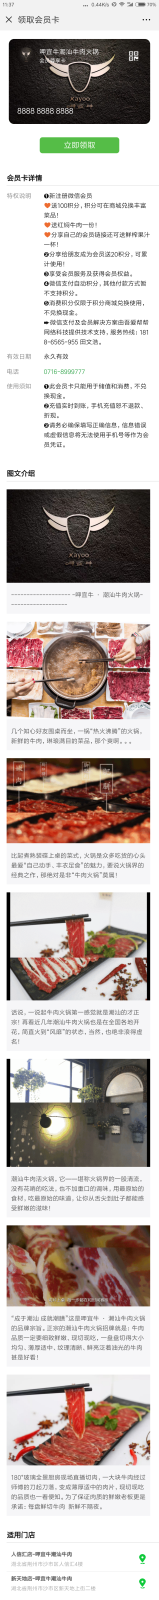 Screenshot_2018-08-28-11-37-49-212_com.tencent.mm.png